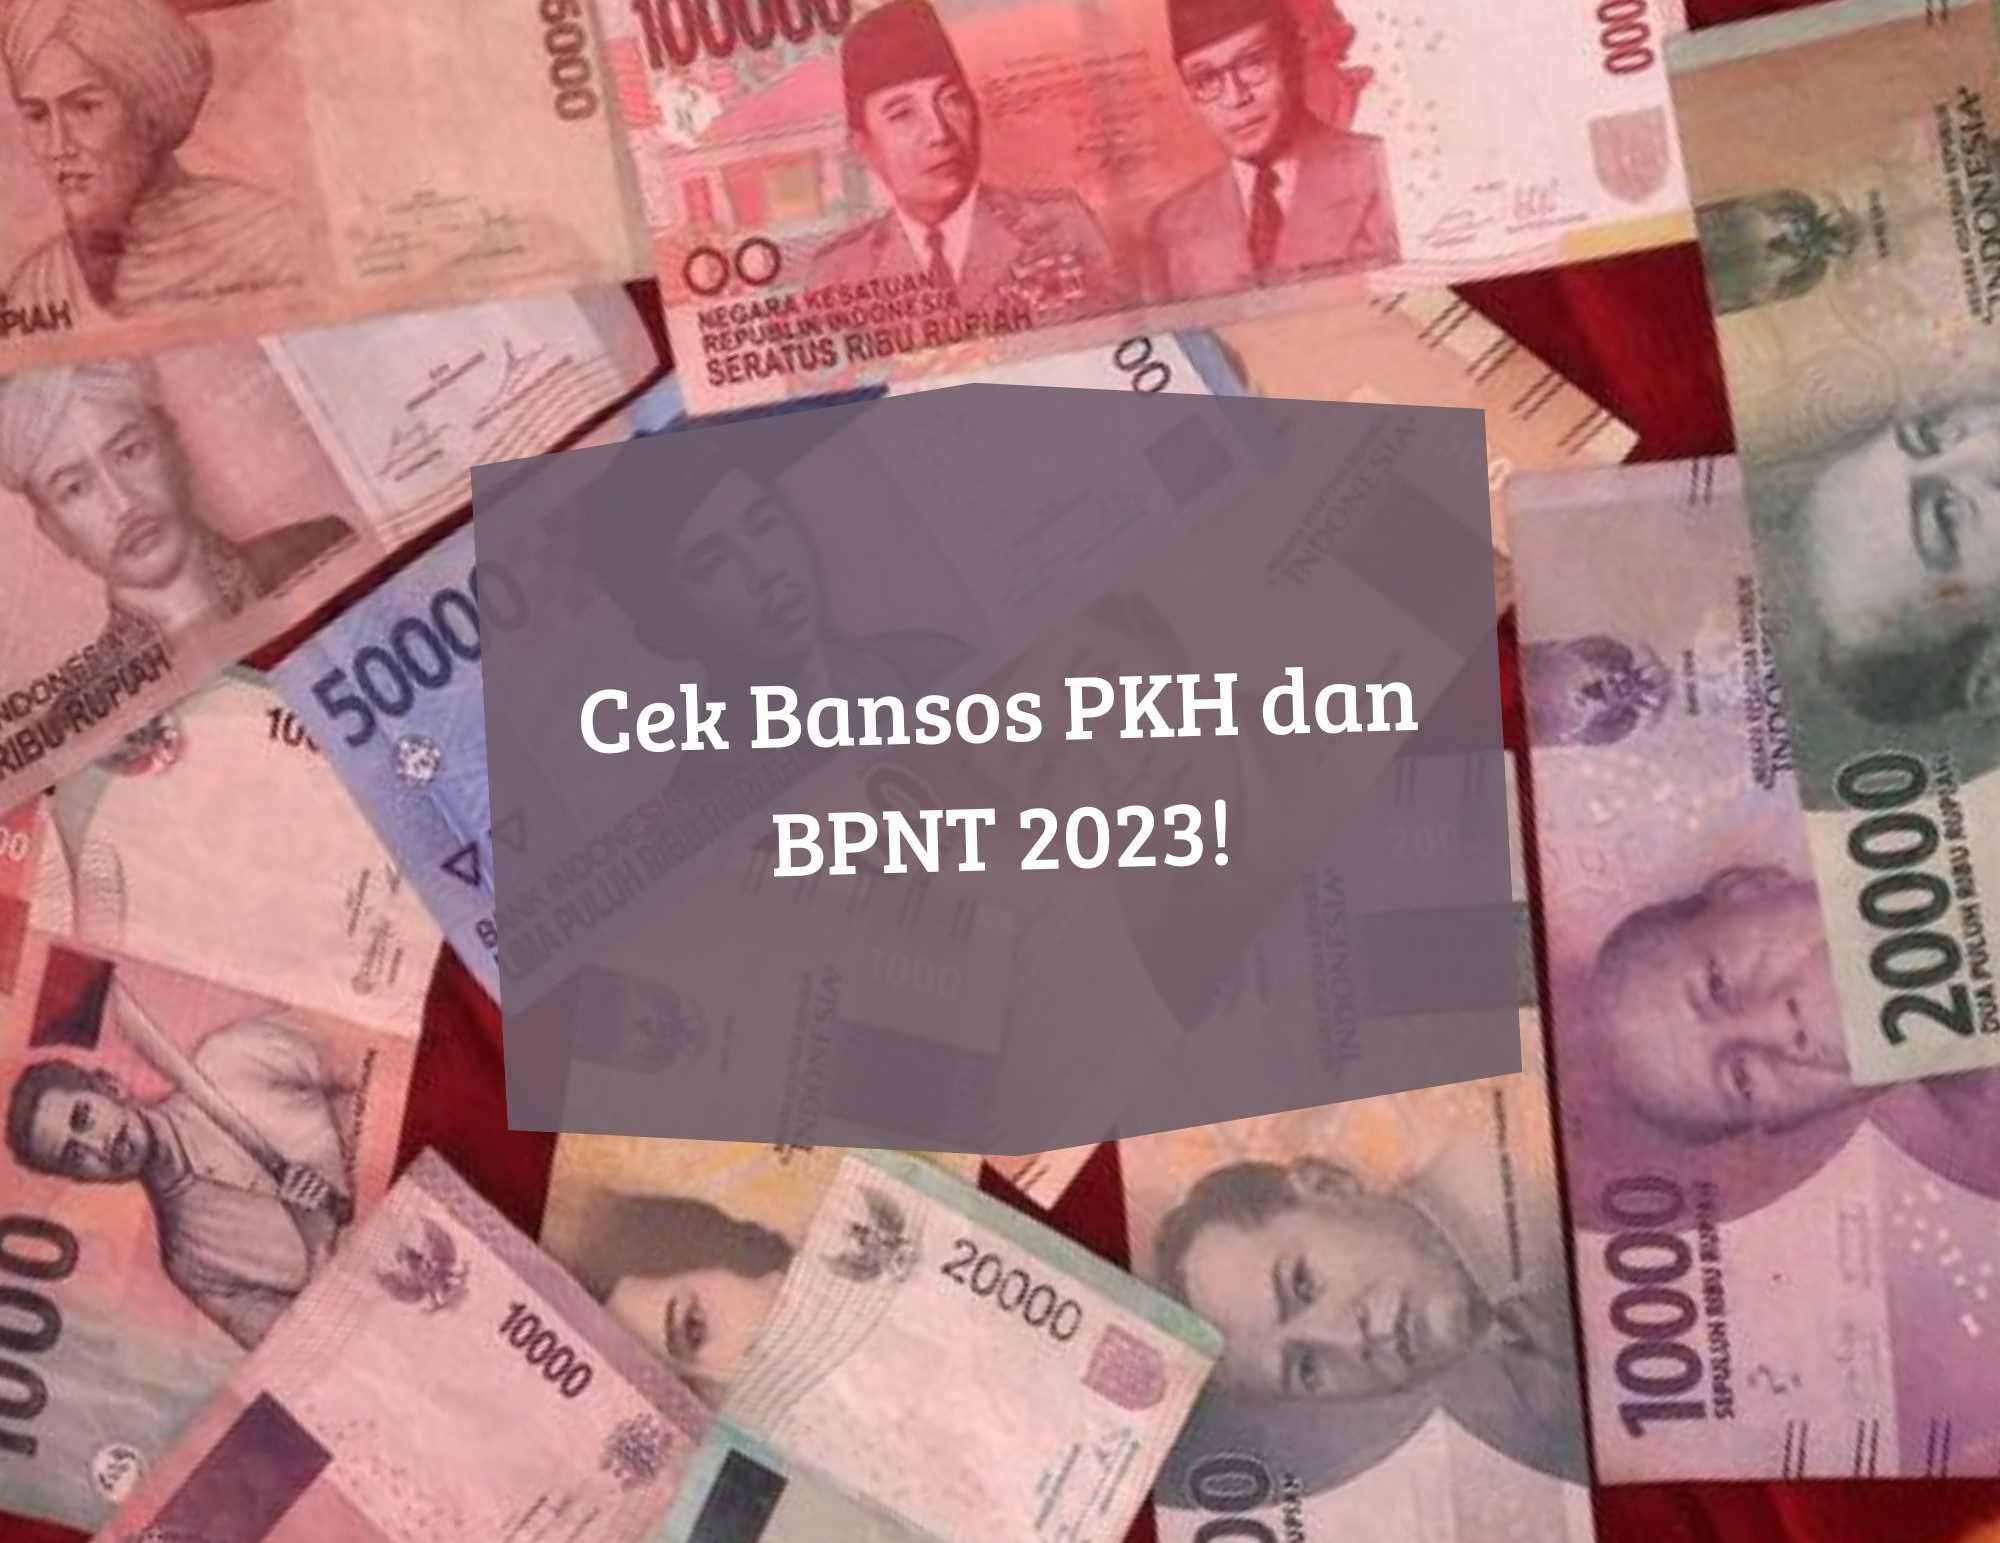 Full Senyum, Bansos PKH dan BPNT 2023 Masih Cair, Cek Status Penerima KKS Lewat Link cekbansos.kemensos.go.id